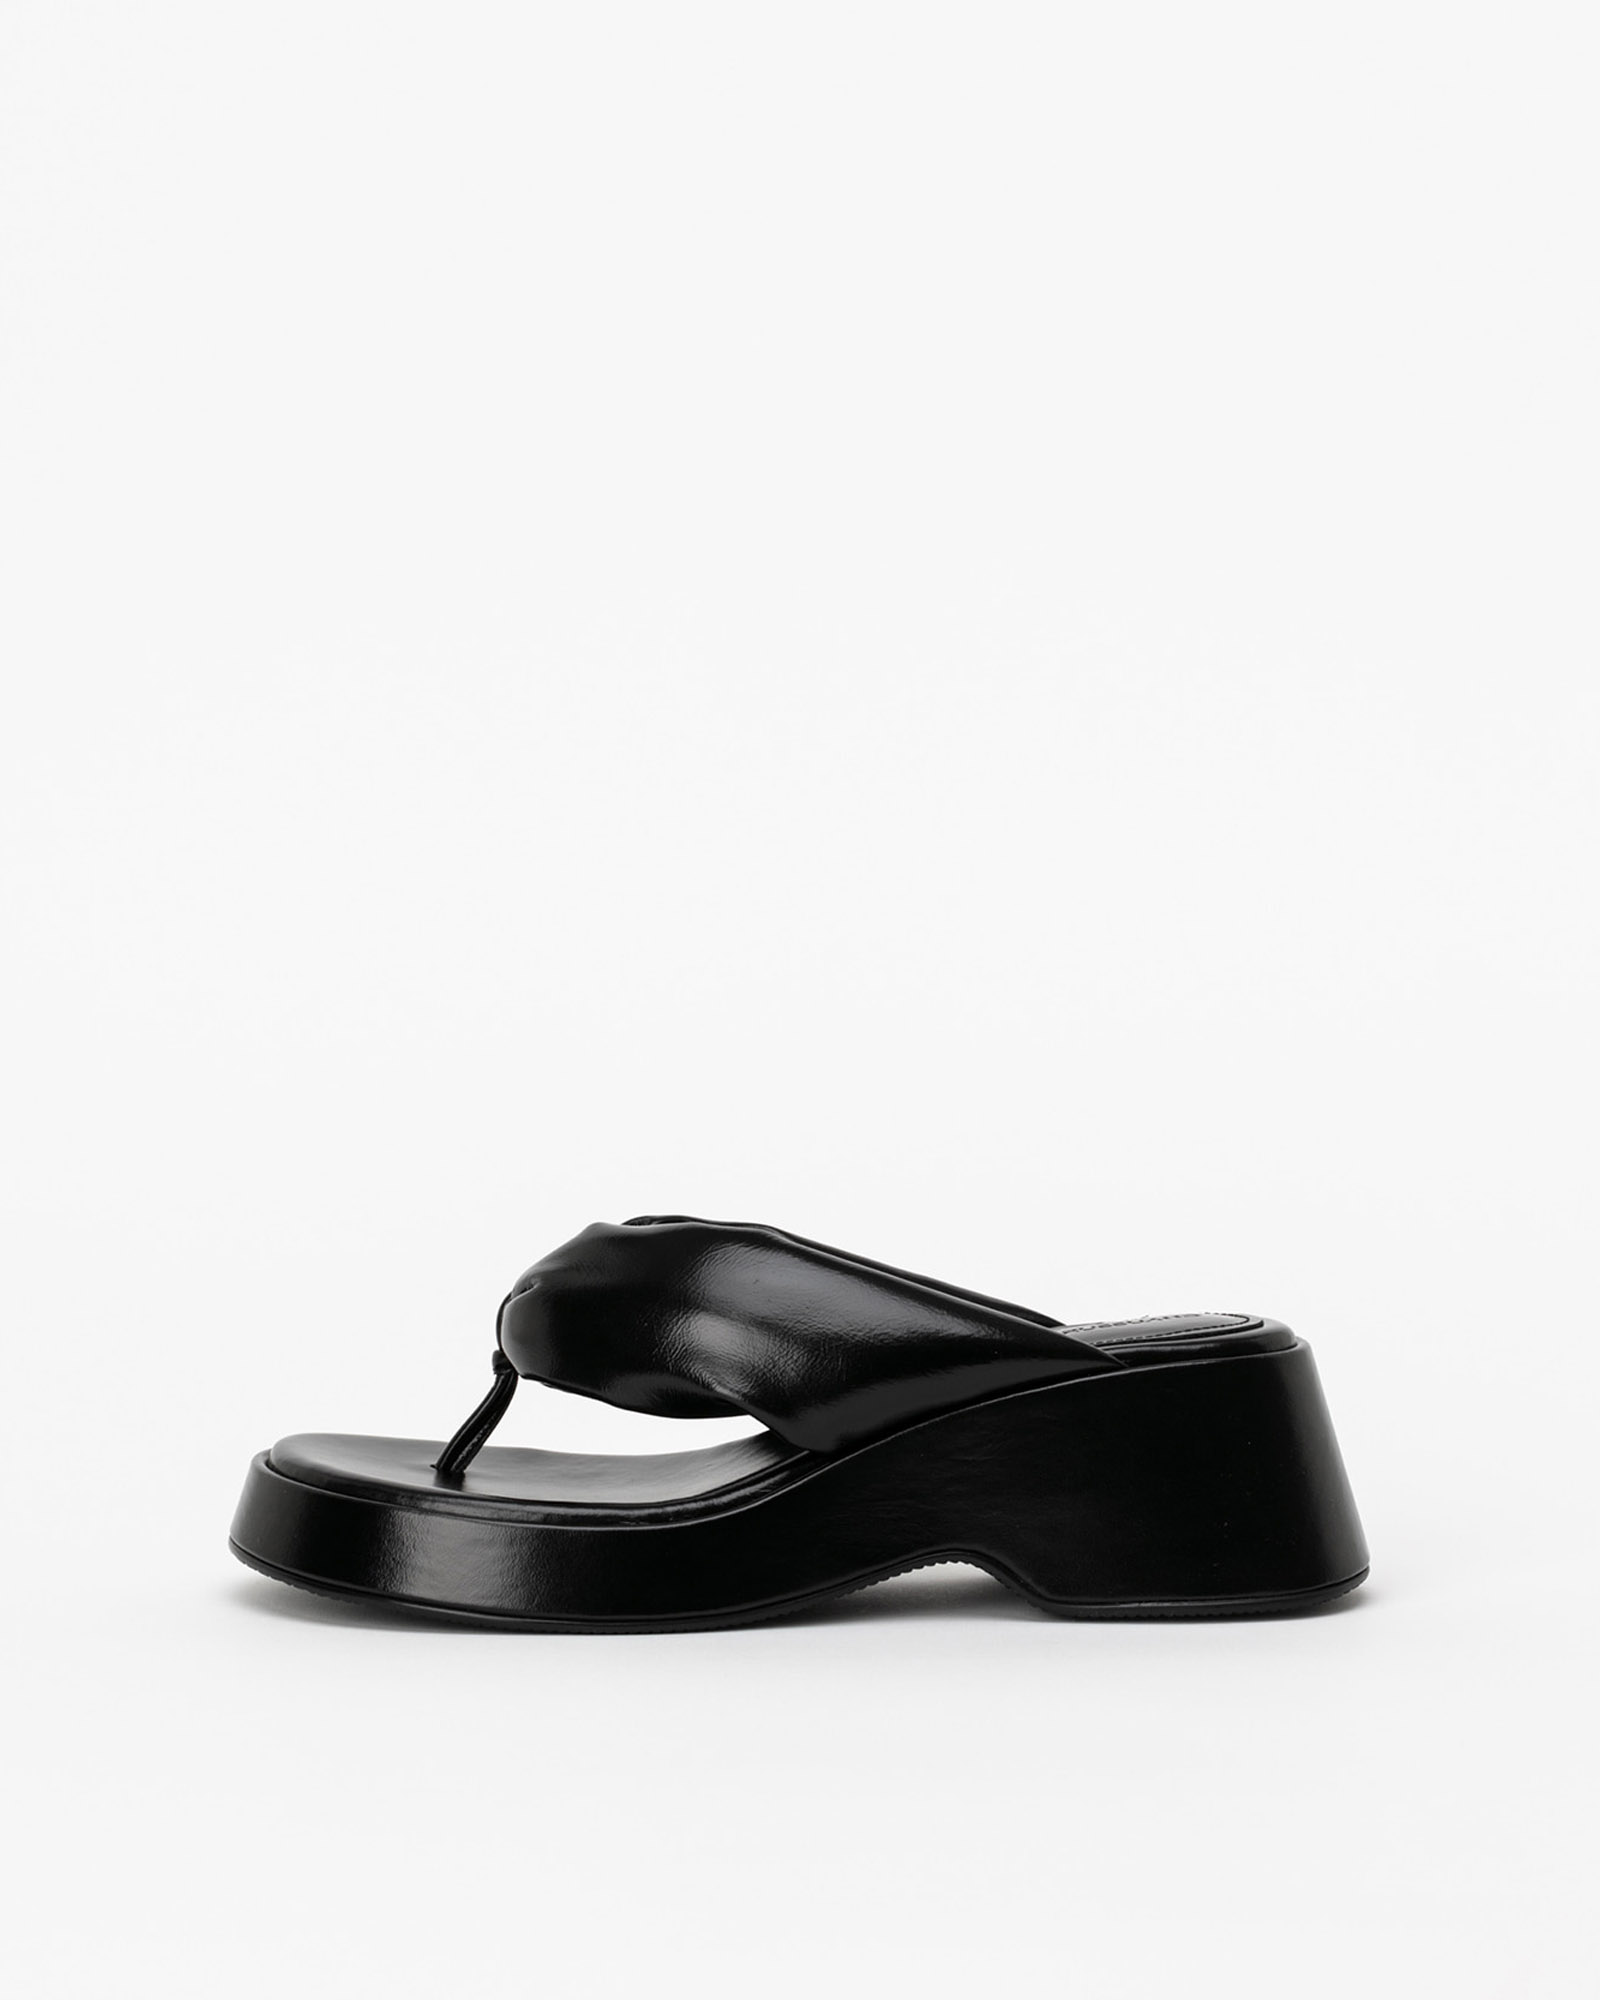 Potran Padded Thong Platform Sandals in Wrinkled Black